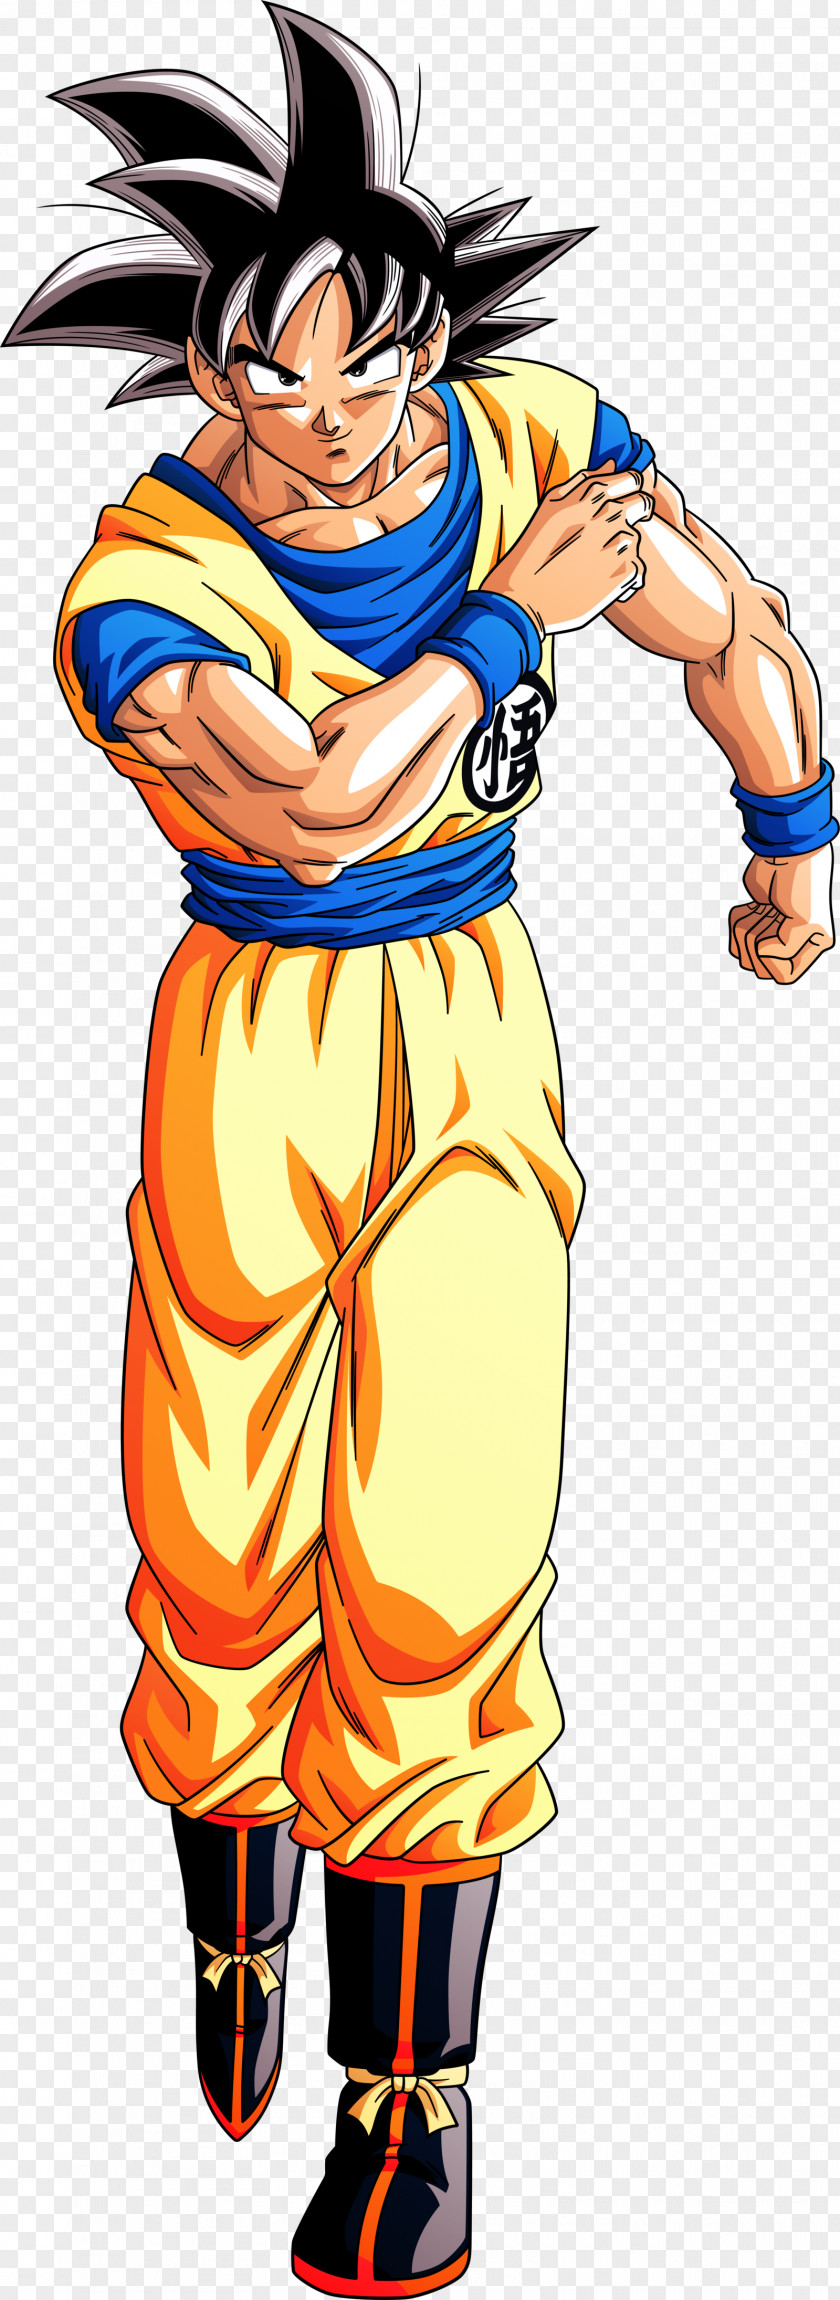 Goku Vegeta Dragon Ball Character The Universal PNG